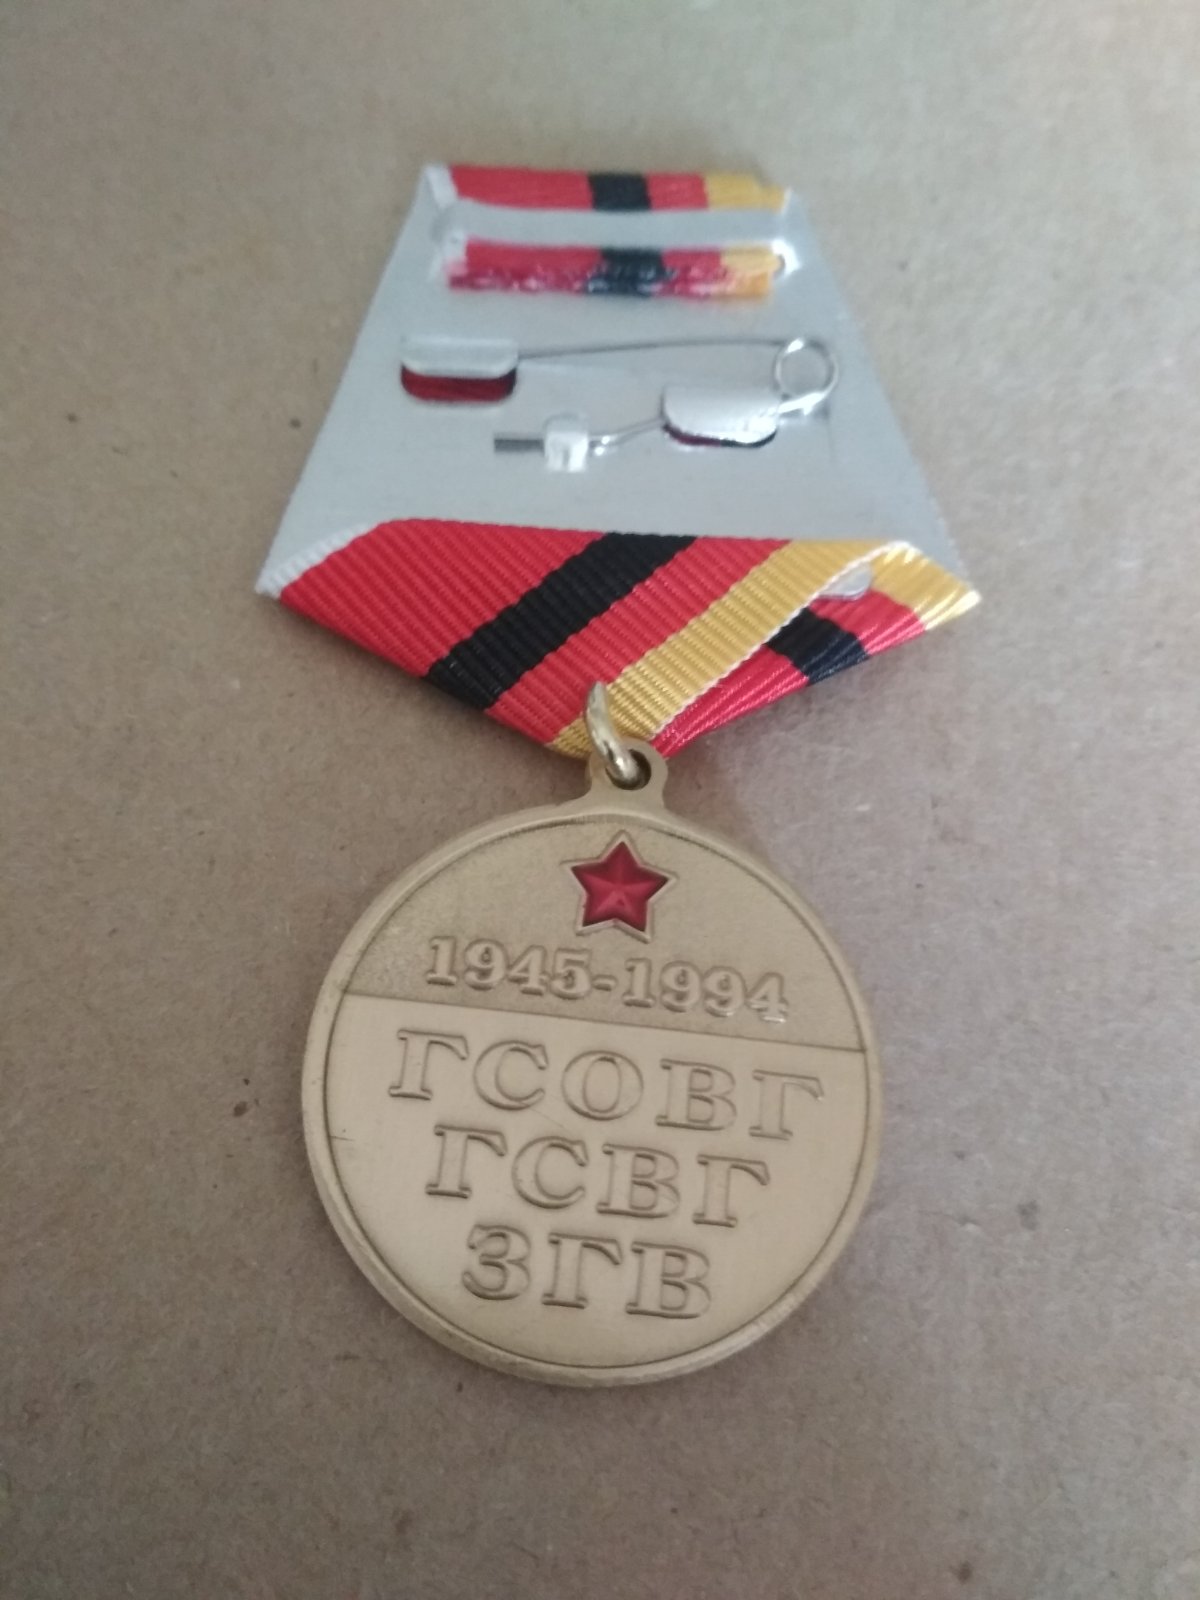 Памятная медаль "Ветеран ГСОВГ ГСВГ ЗГВ 1945-1994"